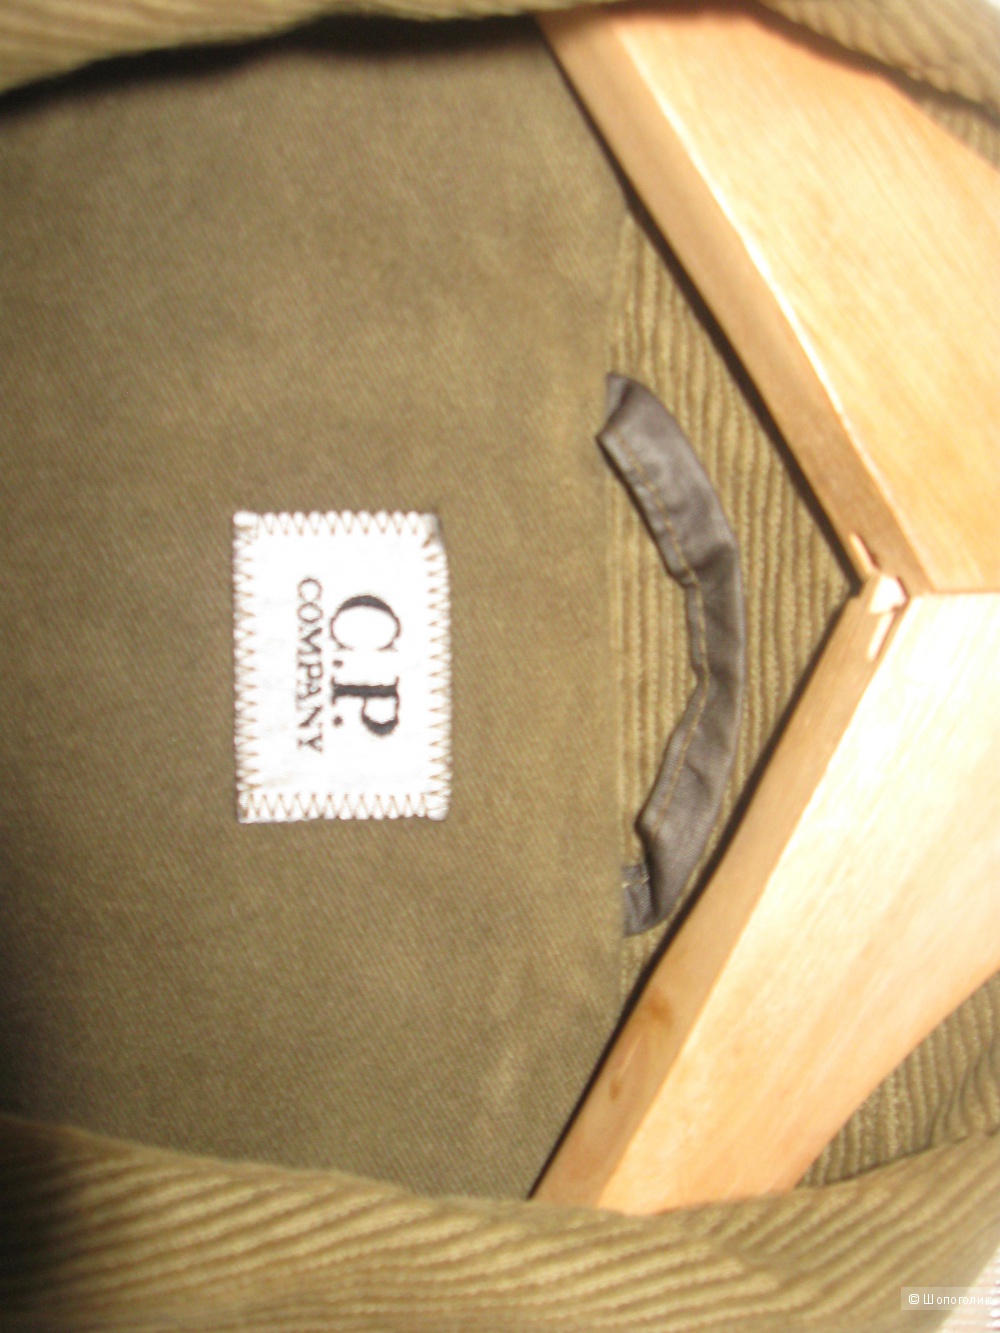 Куртка-пиджак C P Company цвет тёмно-зелёная олива размер L